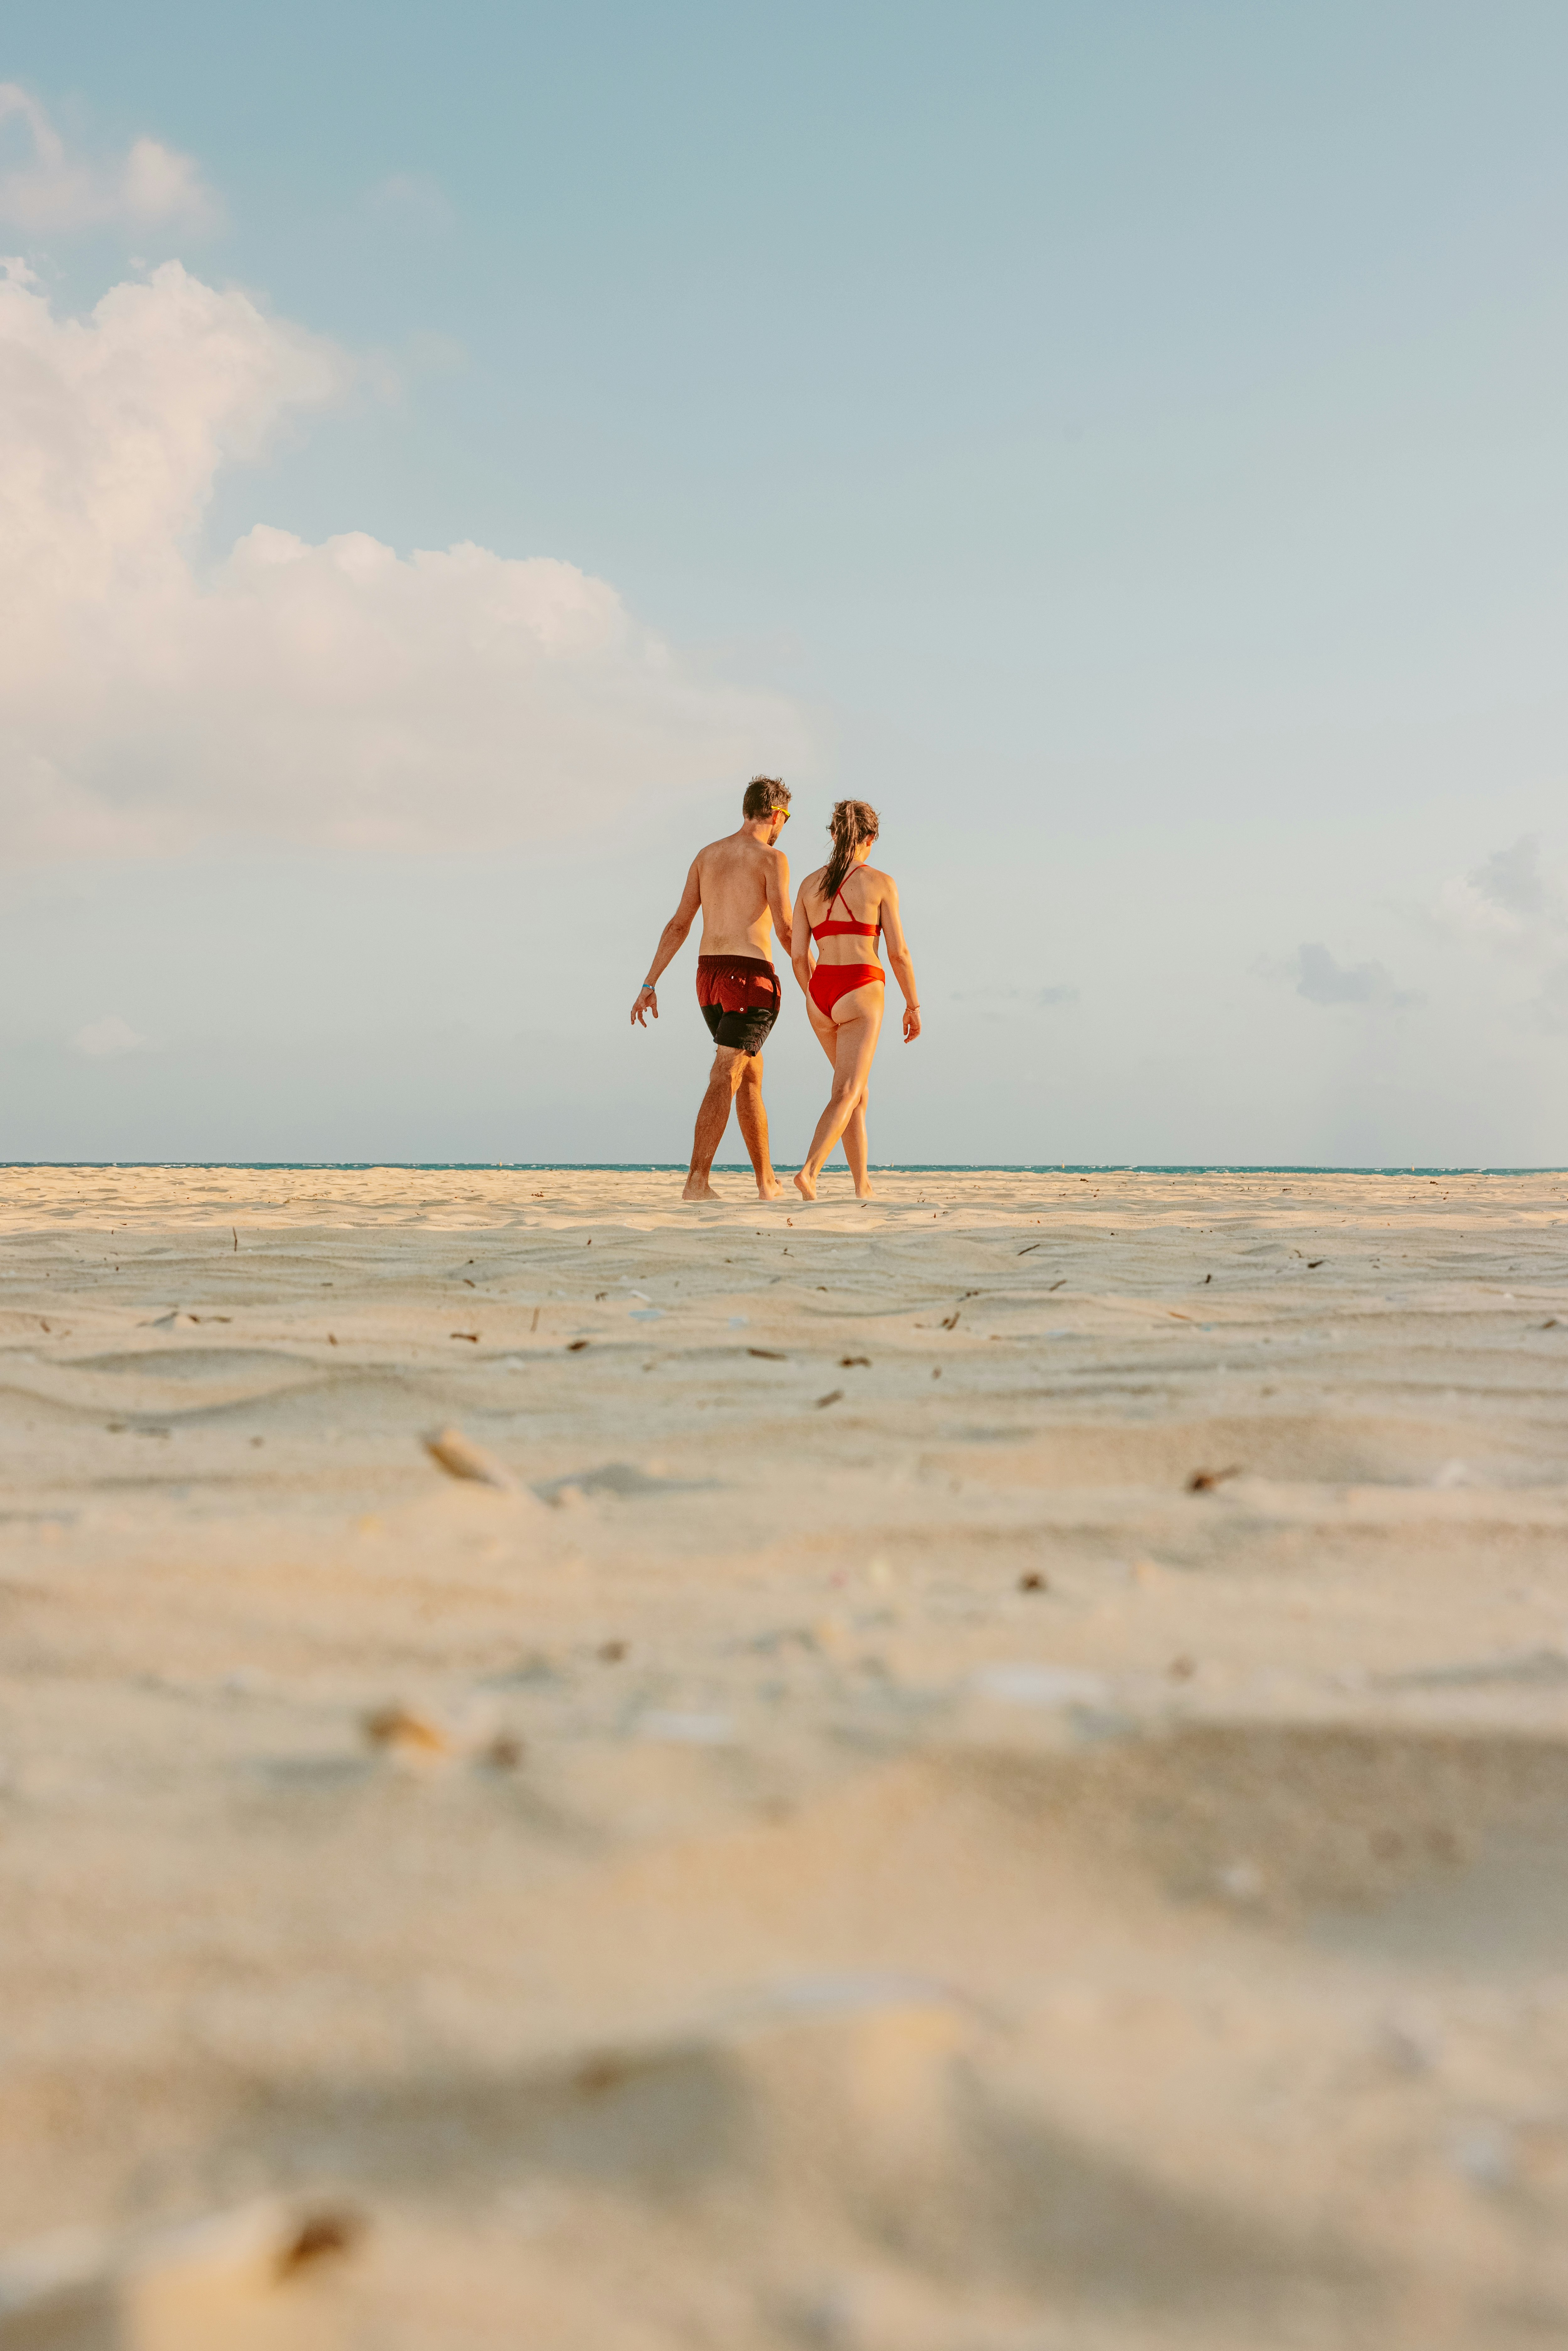 2 women walking on beach during daytime